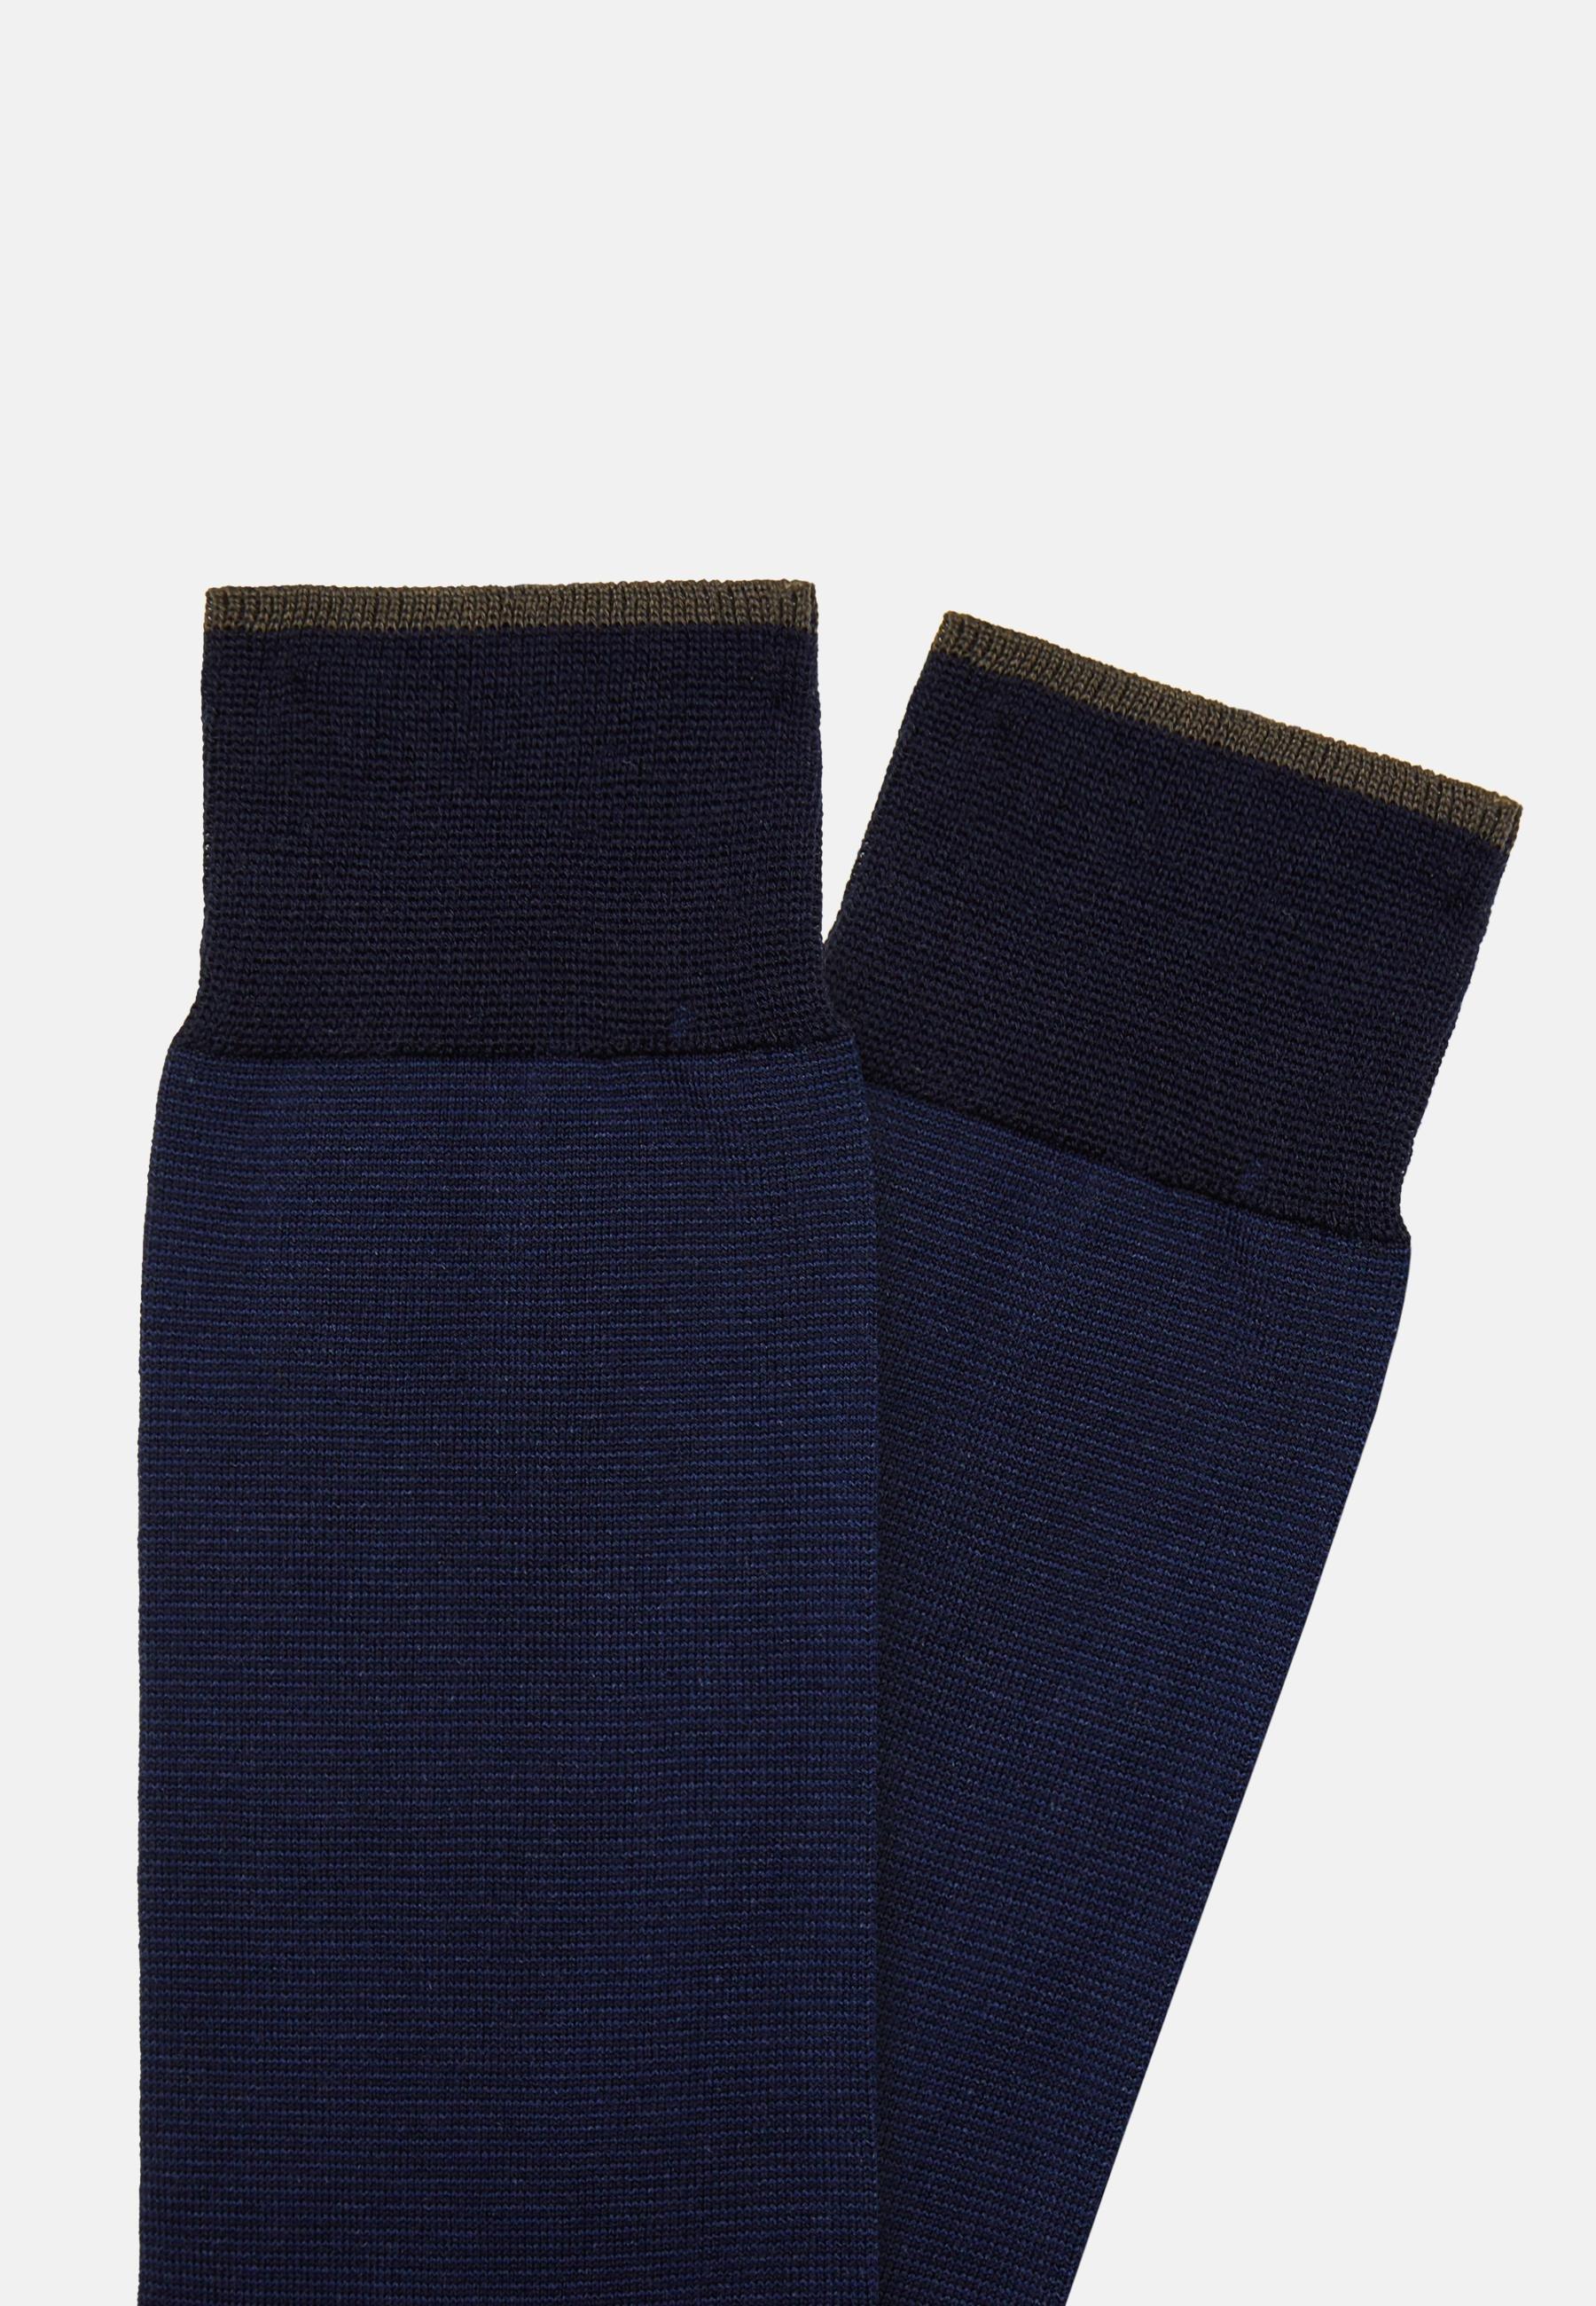 Boggi Milano - Navy Striped Cotton Socks